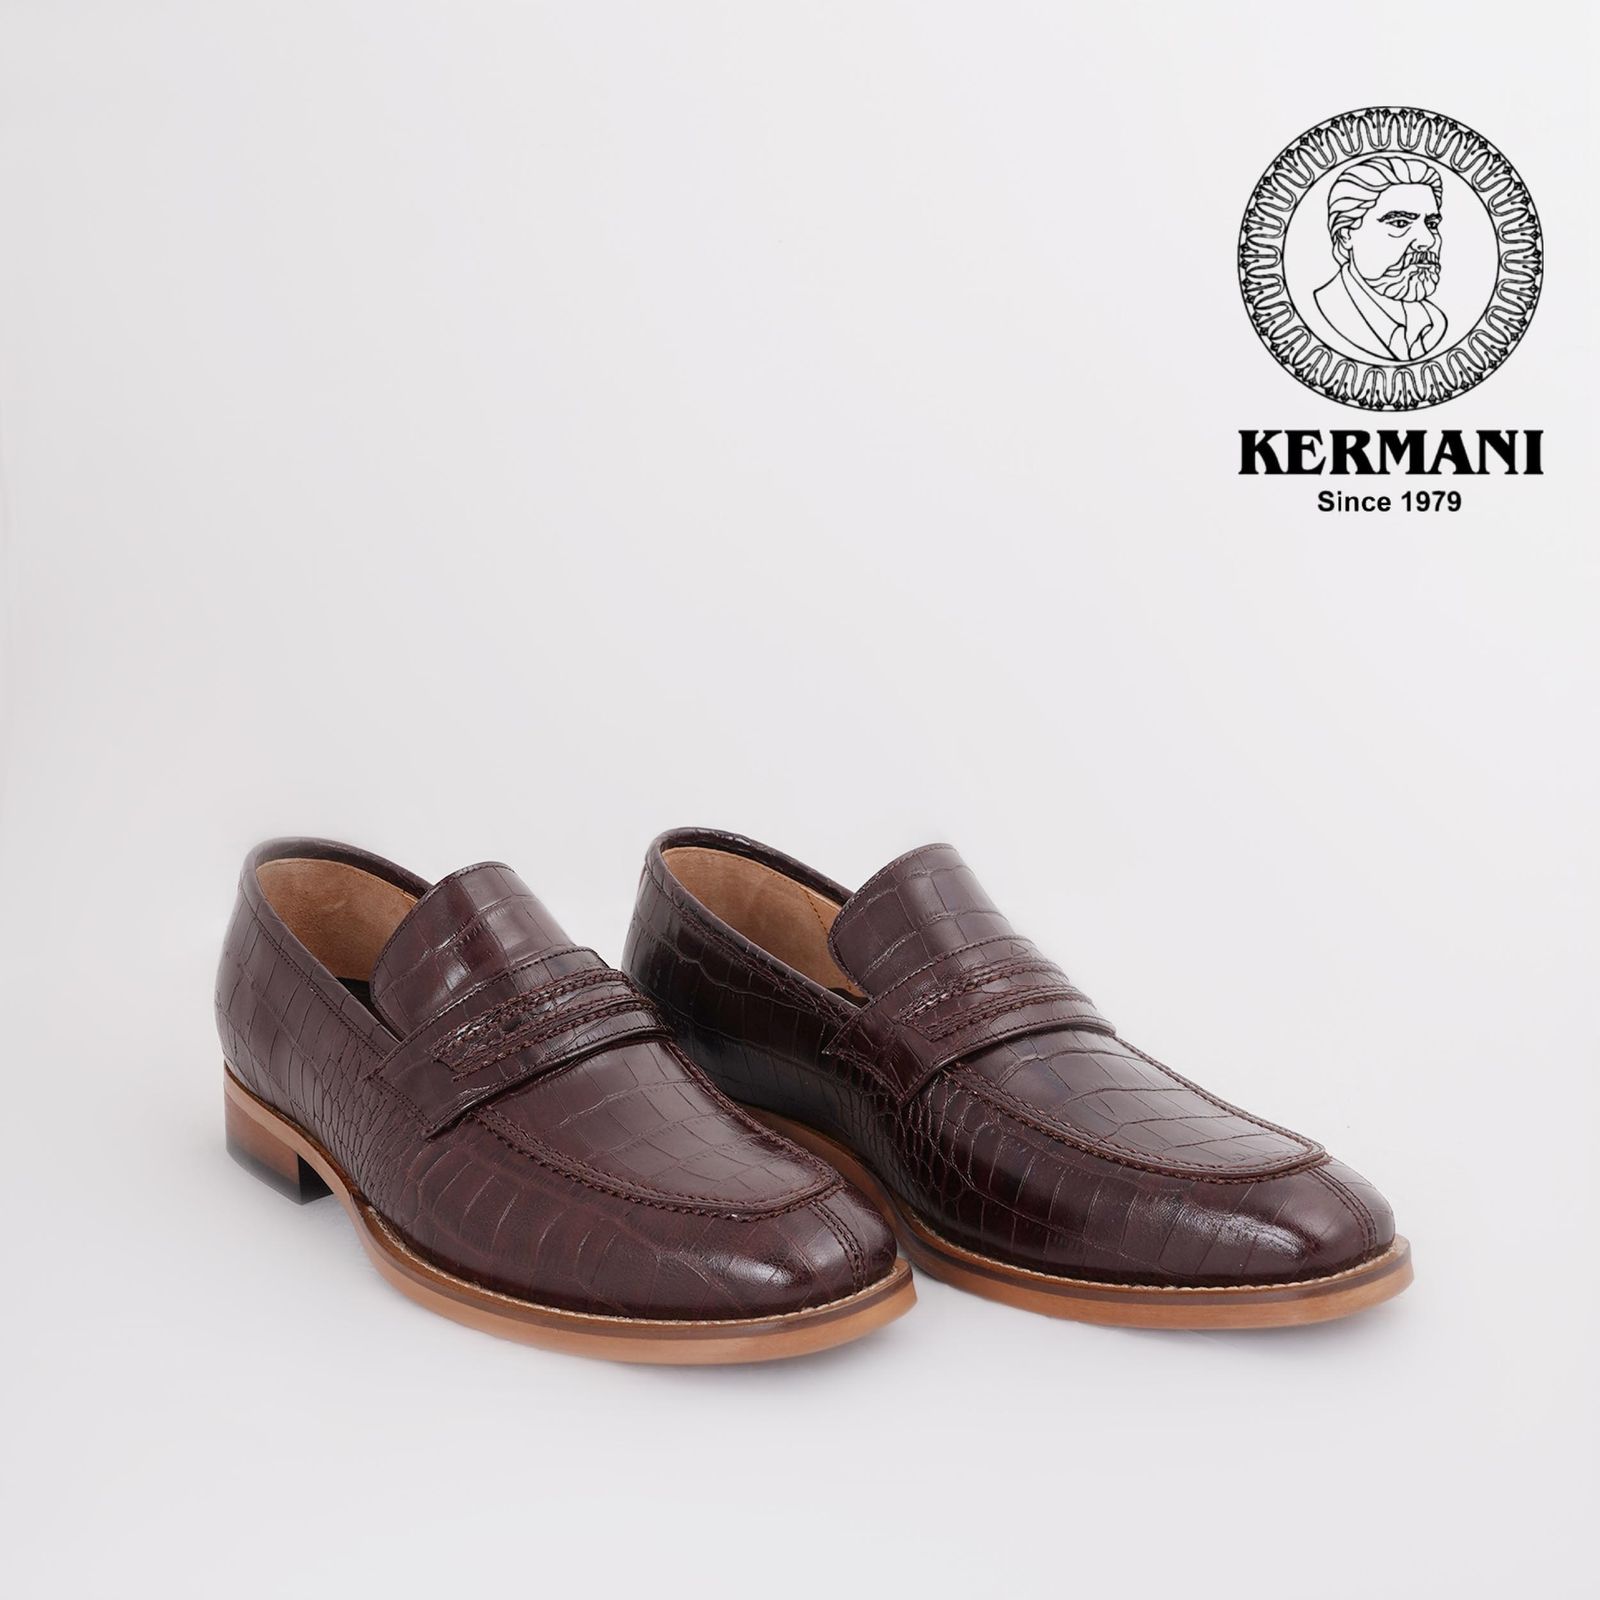 کفش مردانه کرمانی مدل چرم دستدوز طبیعی کروکو کد 1064 رنگ قهوه ای -  - 7